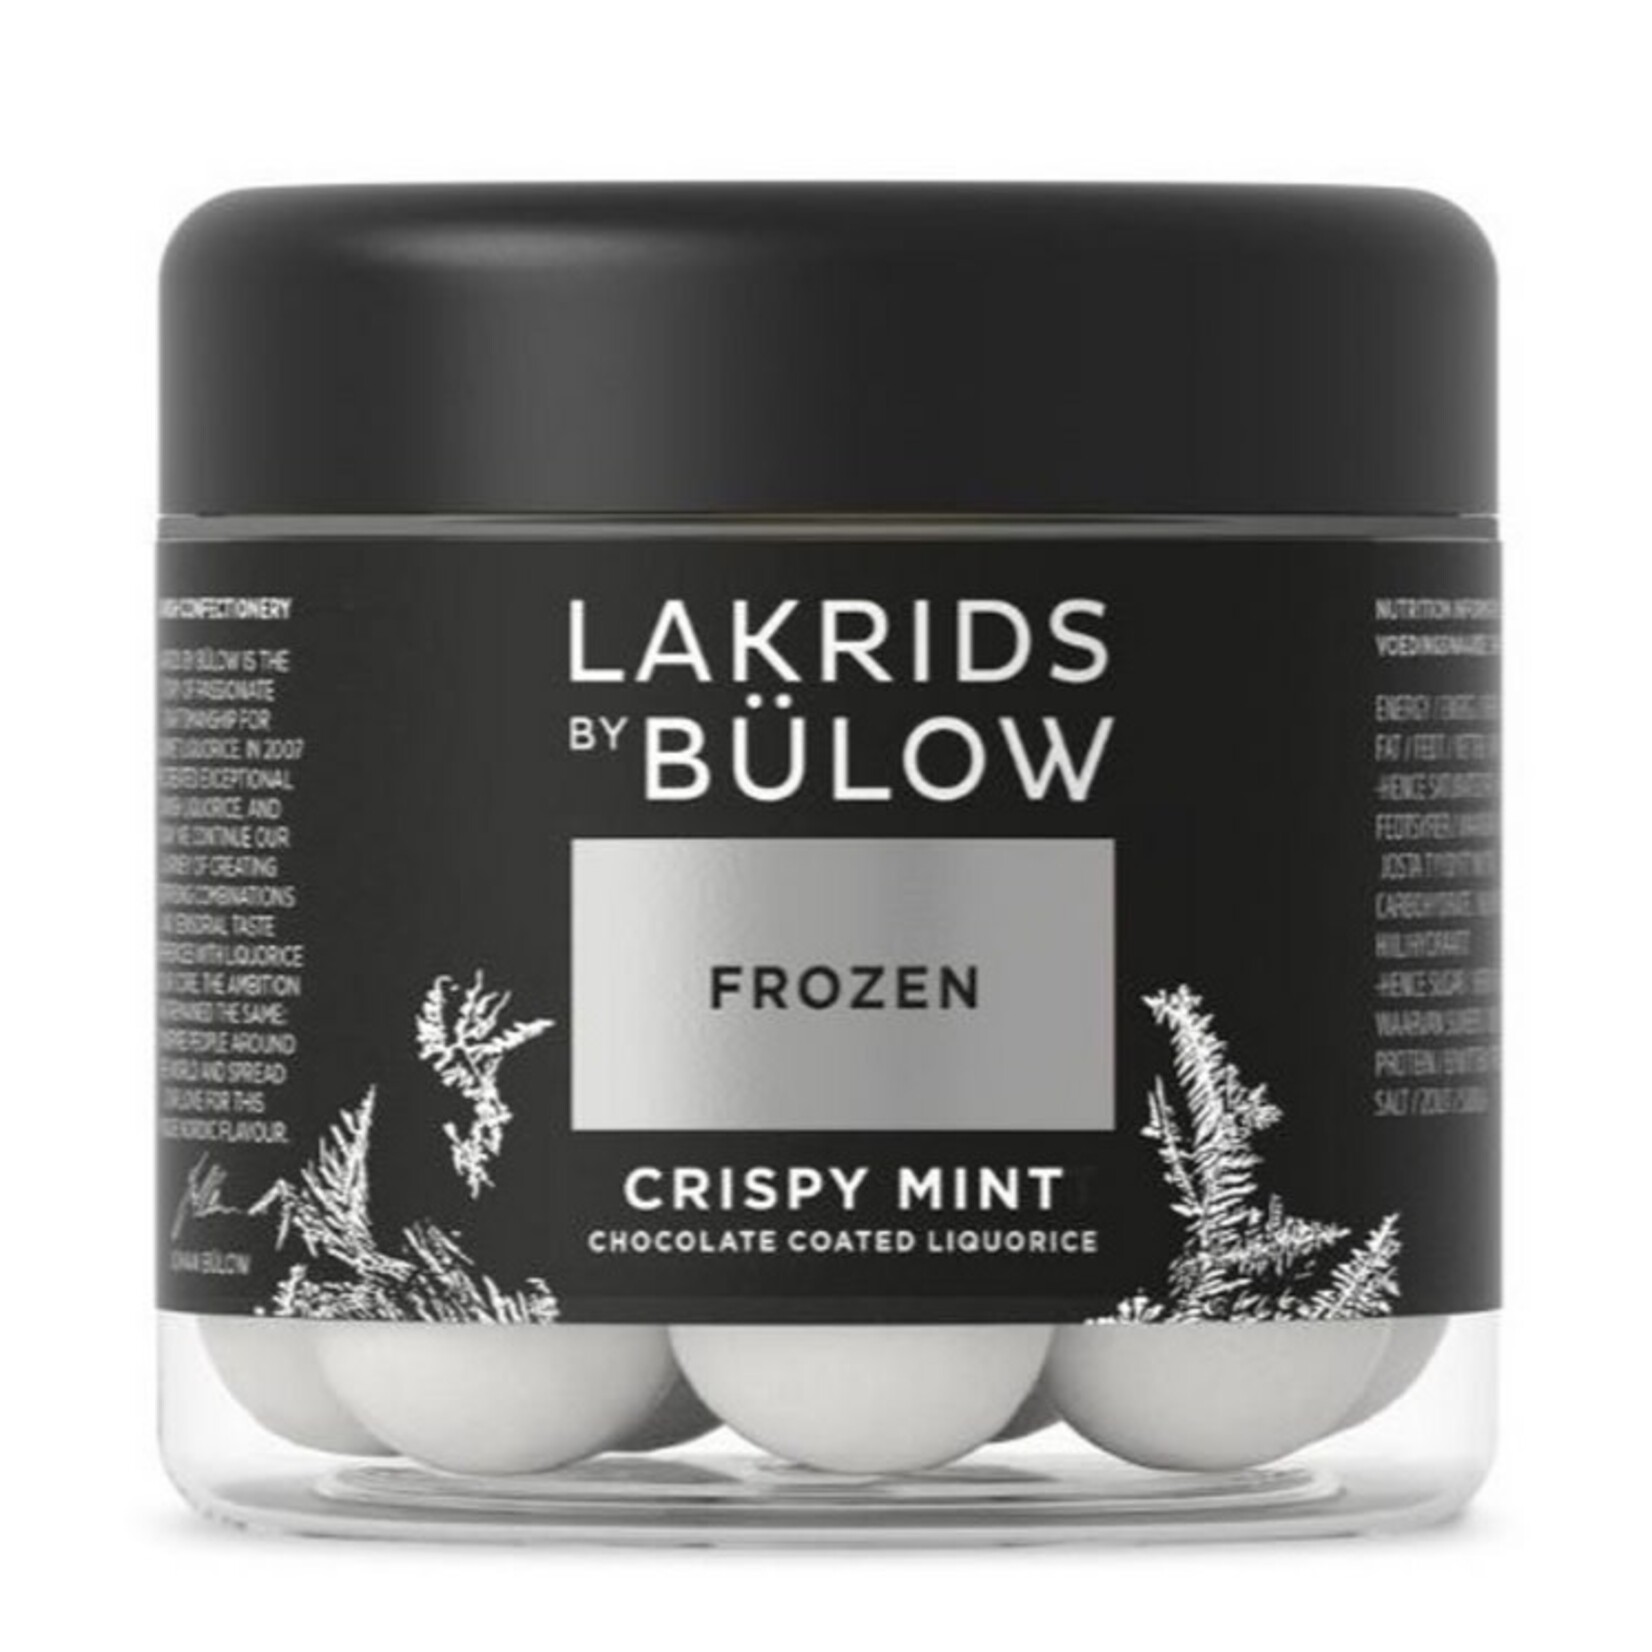 LAKRIDS Frozen Crispy Mint Liquorice 125g